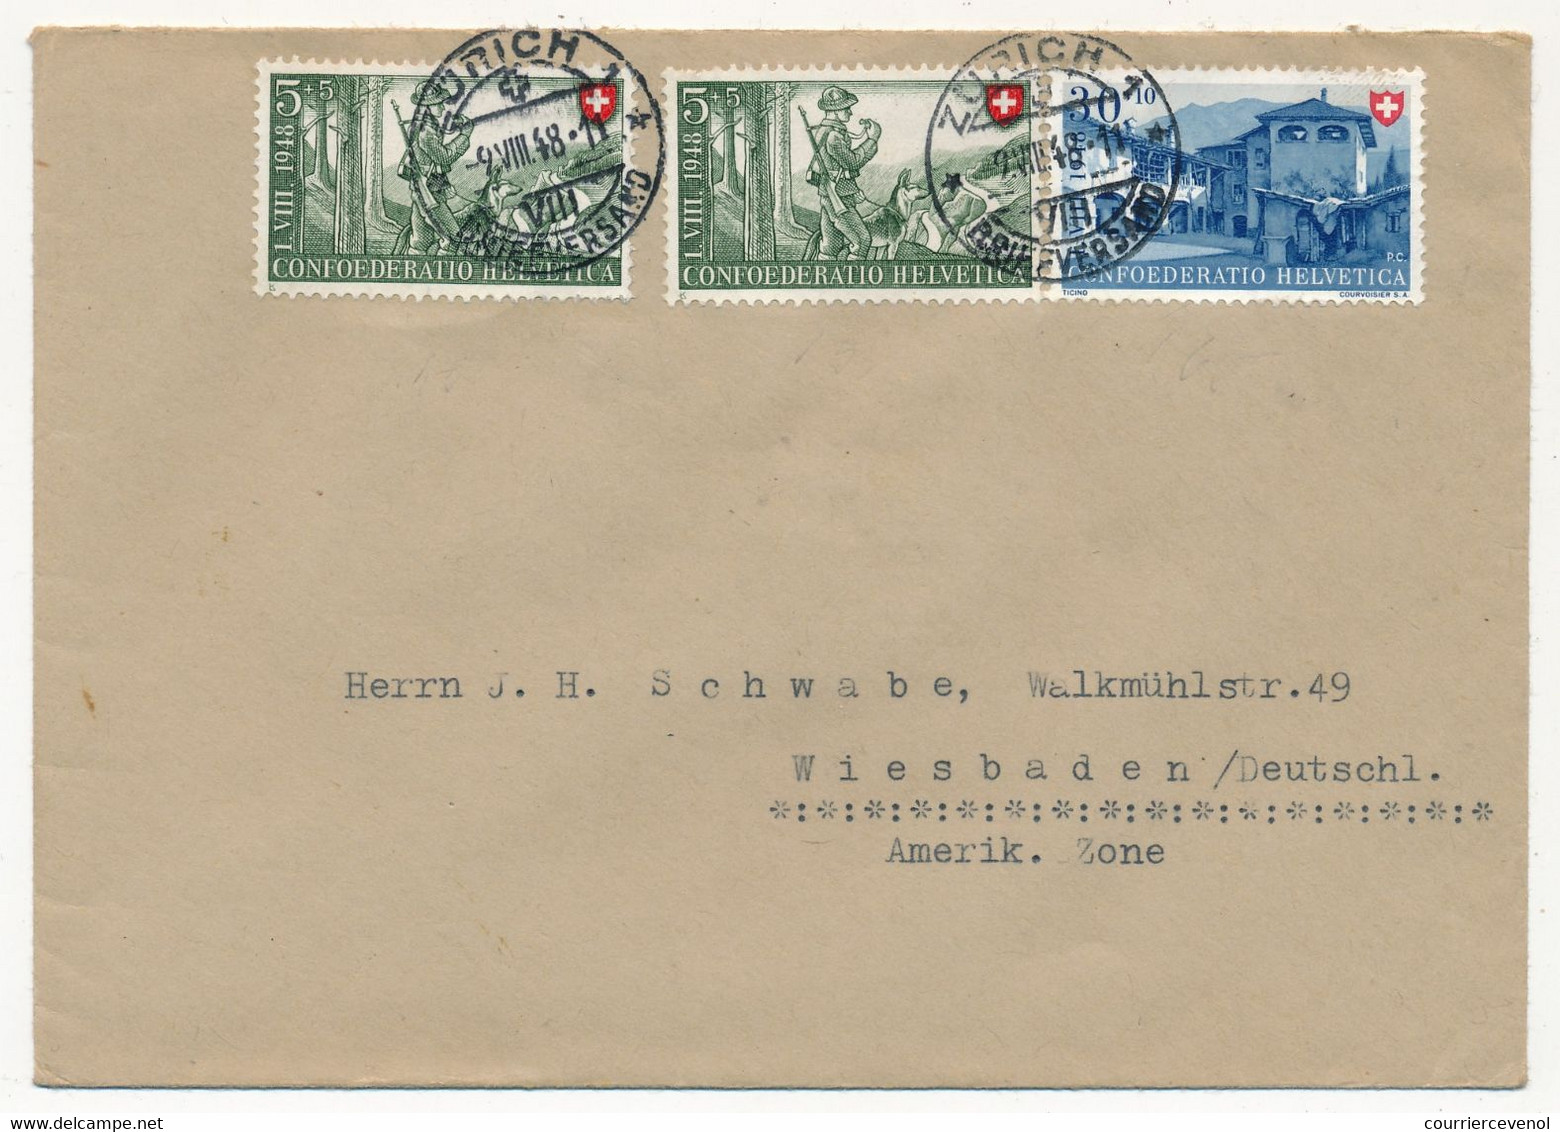 SUISSE - Lot 6 Enveloppes Affranchissements Divers, Composés, 1947 Et 1948 - Covers & Documents